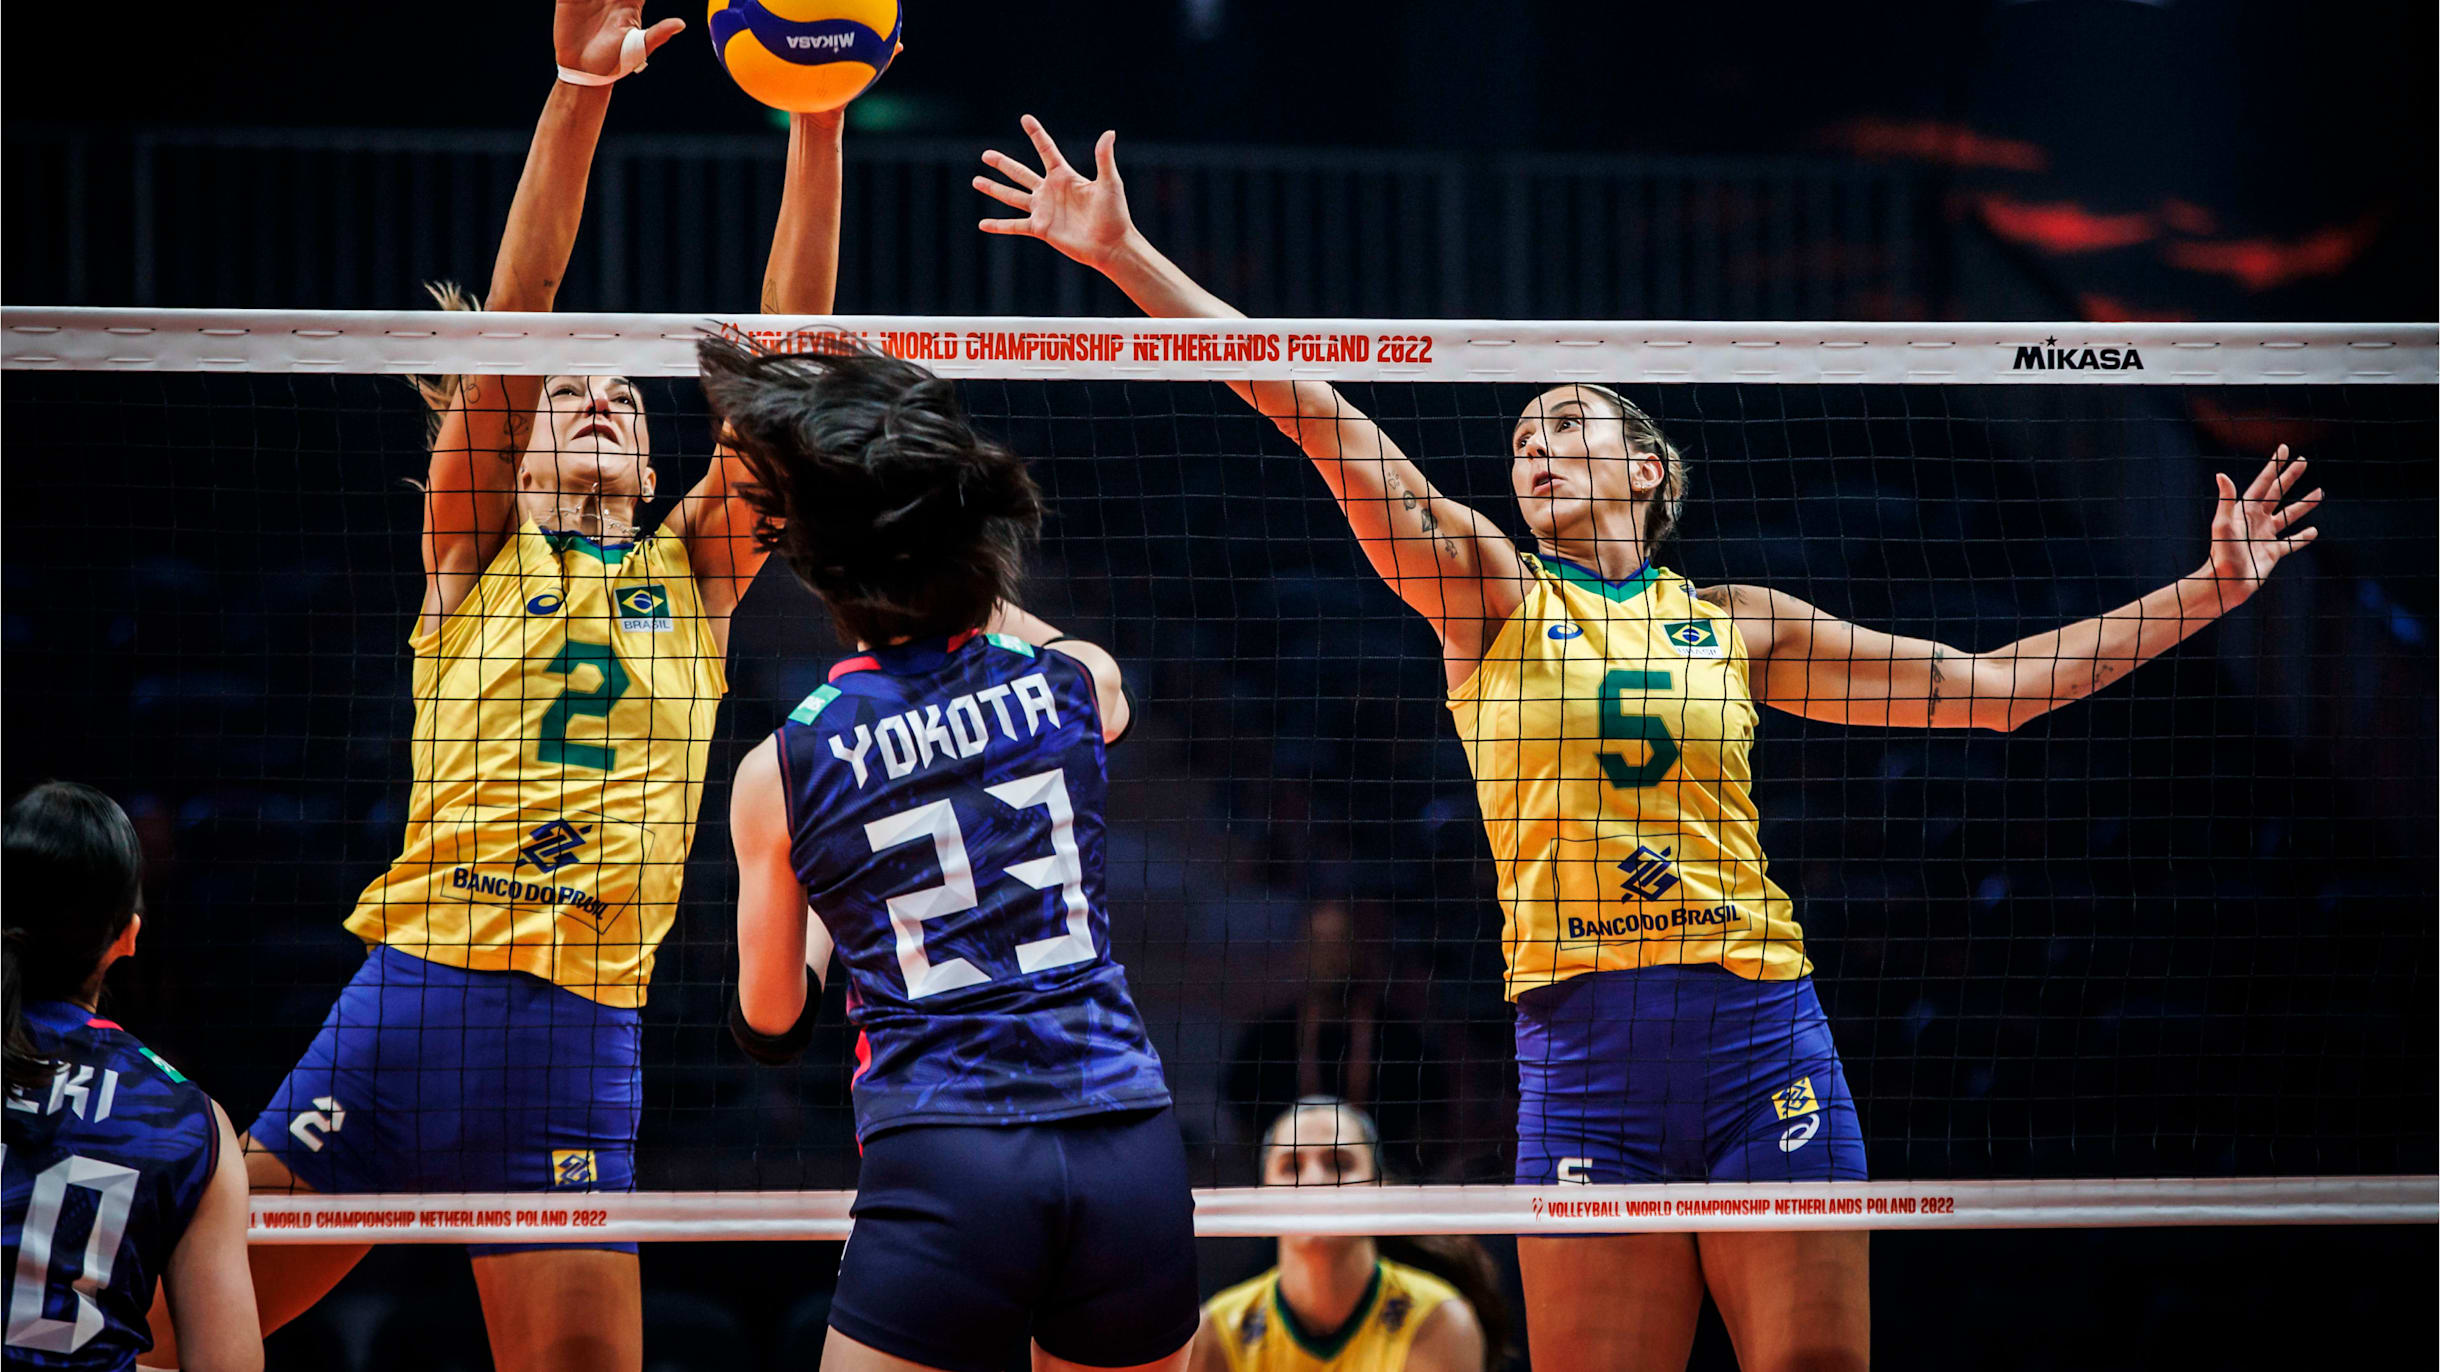 Vôlei feminino: Brasil derrota o Japão no tie-break e garante vaga